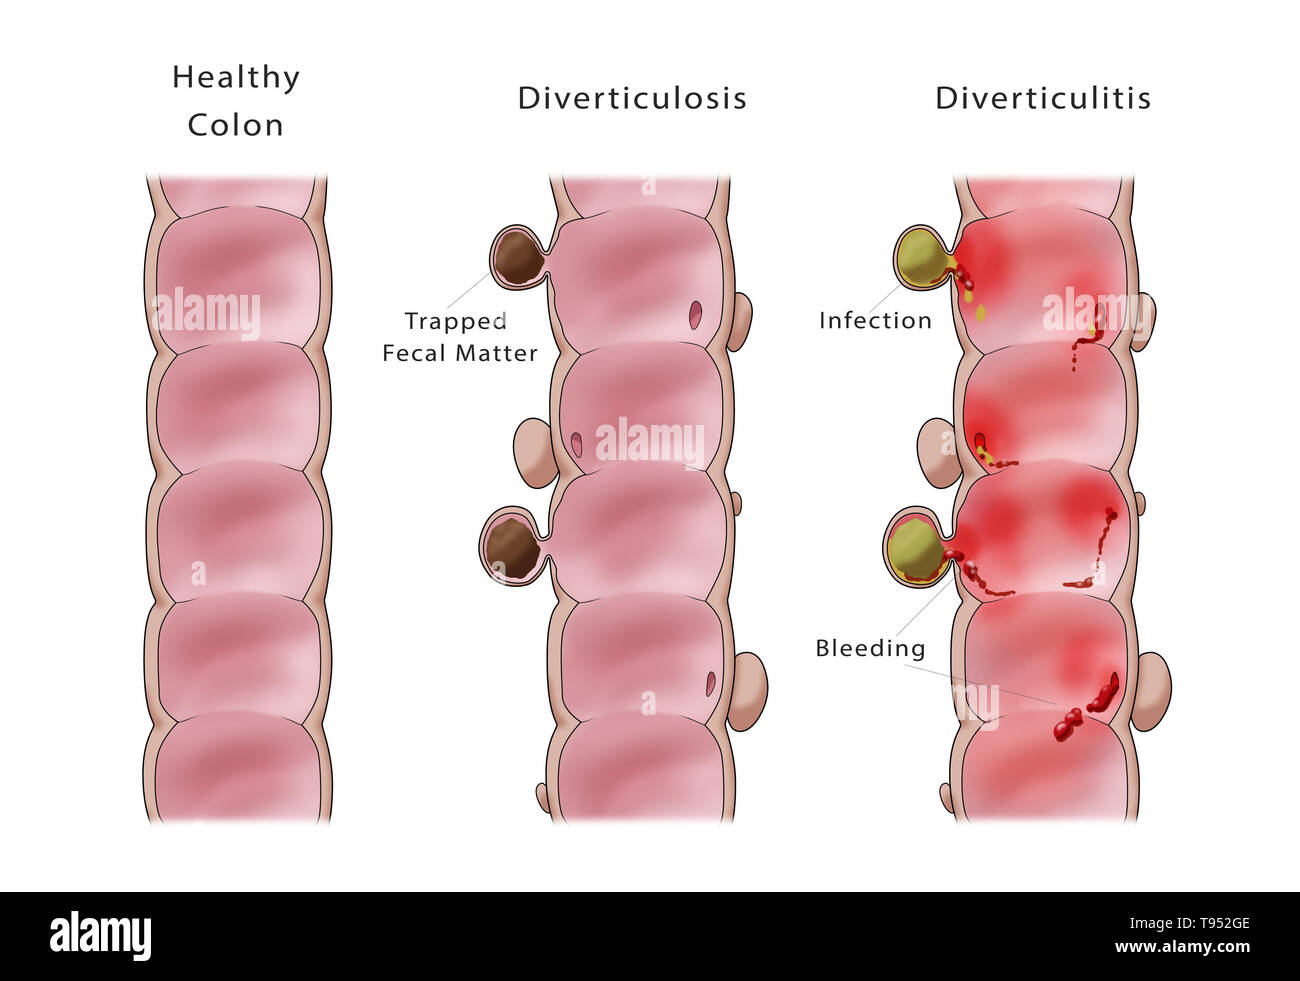 Abbildung: Vergleich diverticulosis Diverticulitis (Mitte) und (rechts). Ein gesunder Darm ist auf der linken Seite angezeigt. Stockfoto